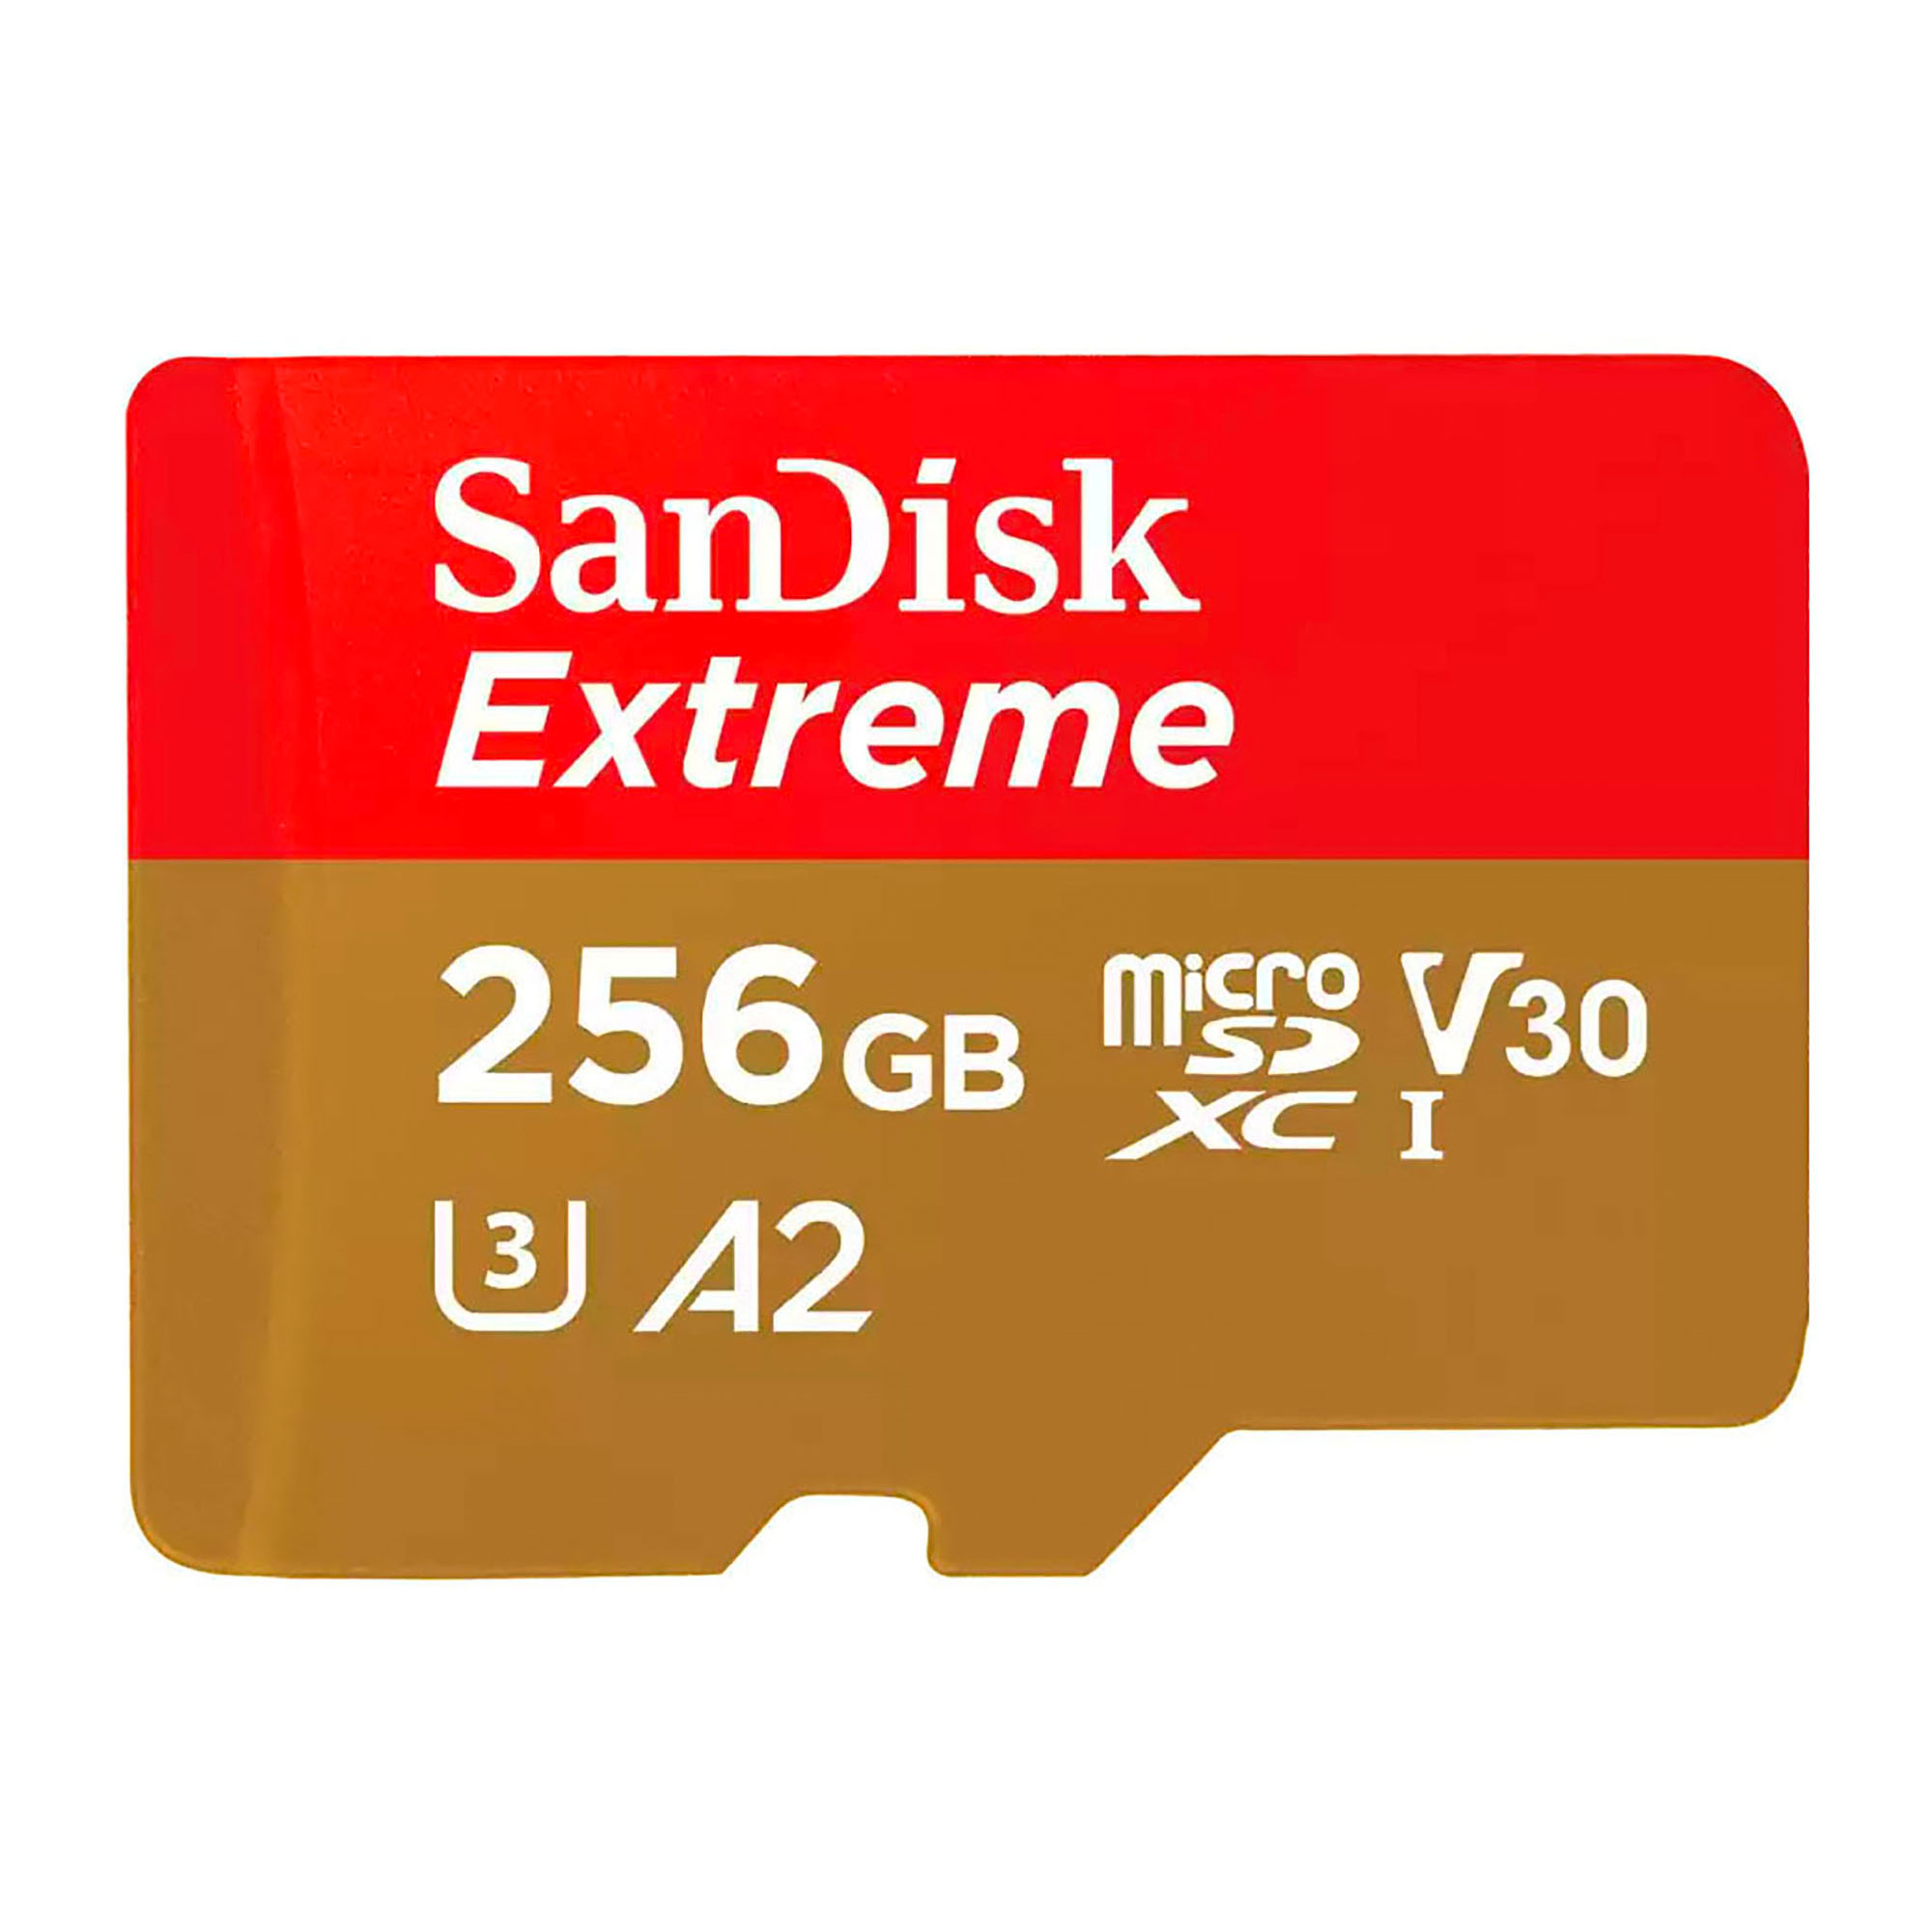 Samsung carte microSDXC 512 Go PRO Plus avec clé USB - Carte